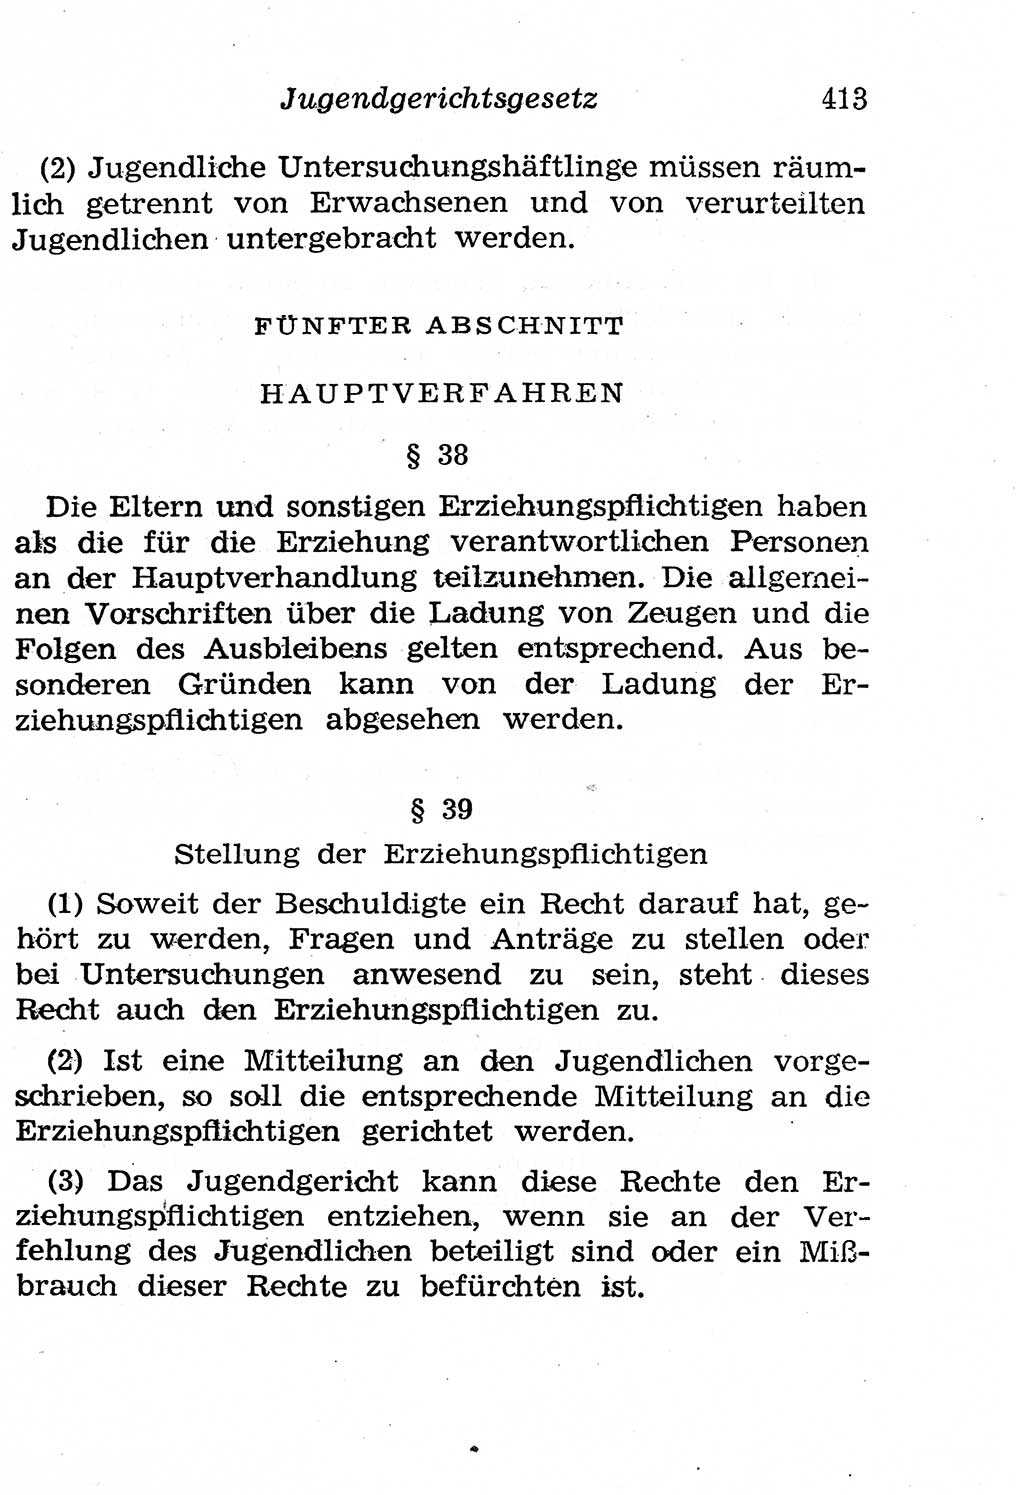 Strafgesetzbuch (StGB) und andere Strafgesetze [Deutsche Demokratische Republik (DDR)] 1958, Seite 413 (StGB Strafges. DDR 1958, S. 413)